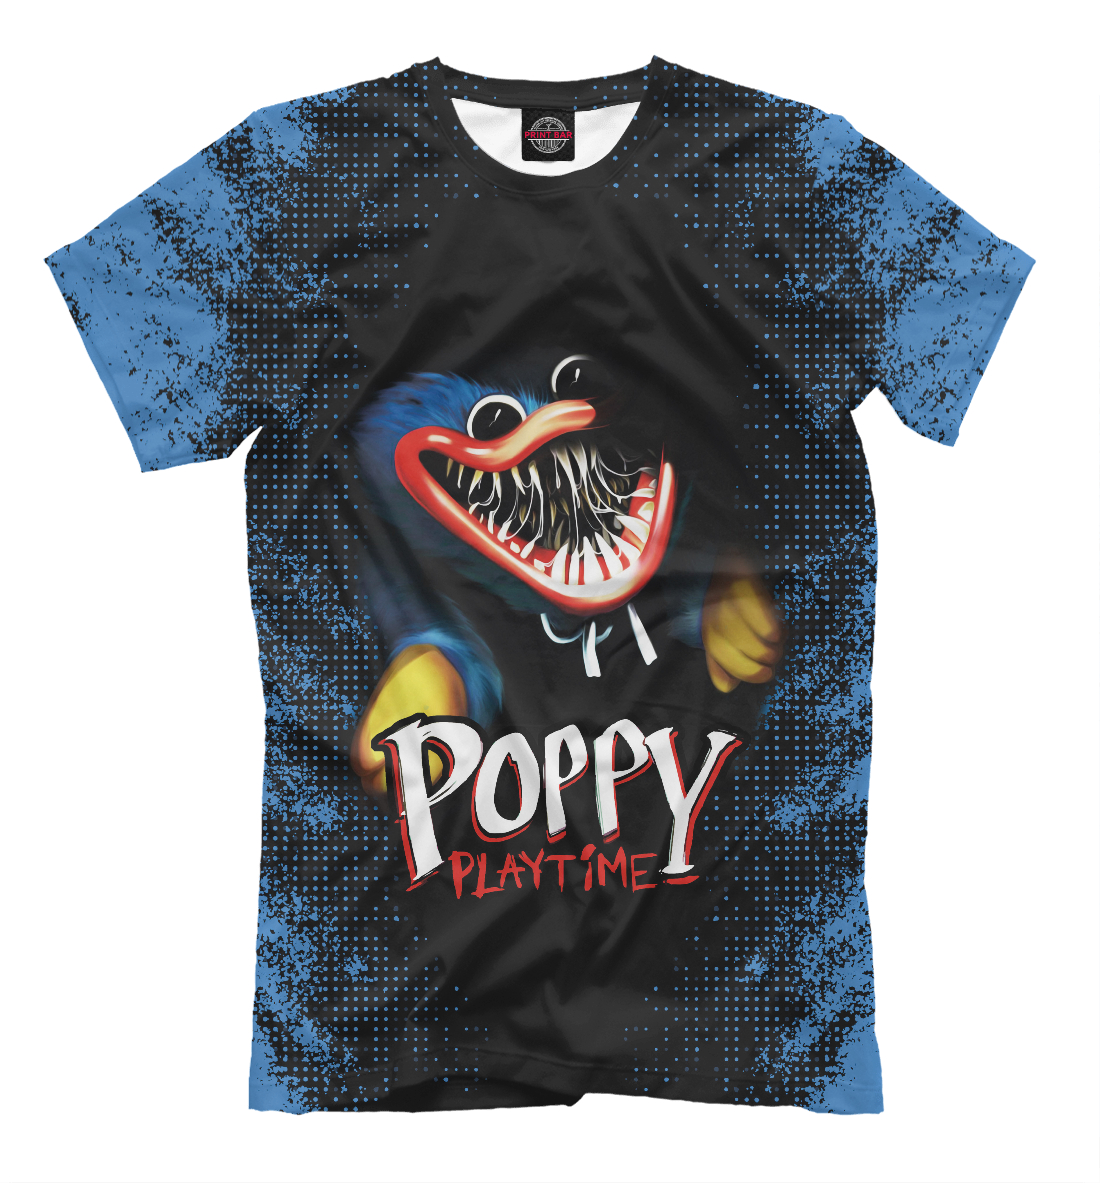 Футболка Poppy Playtime Хагги Вагги для мальчиков, артикул: PPE-806439-fut-2mp